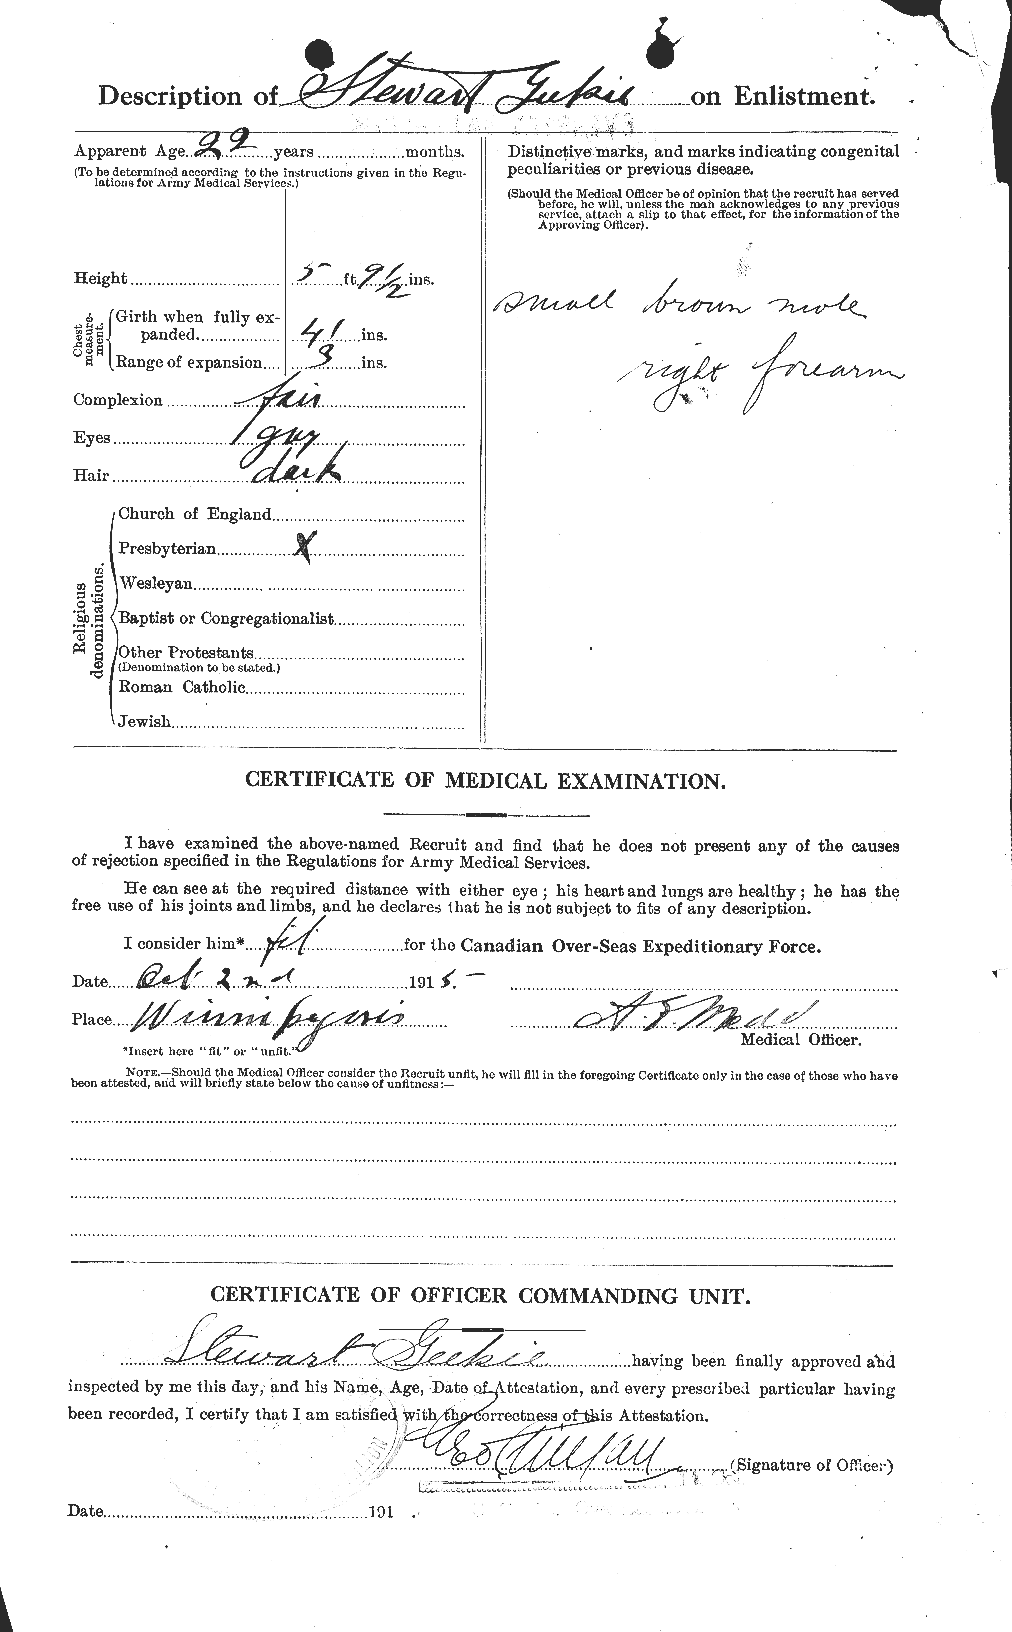 Dossiers du Personnel de la Première Guerre mondiale - CEC 347331b